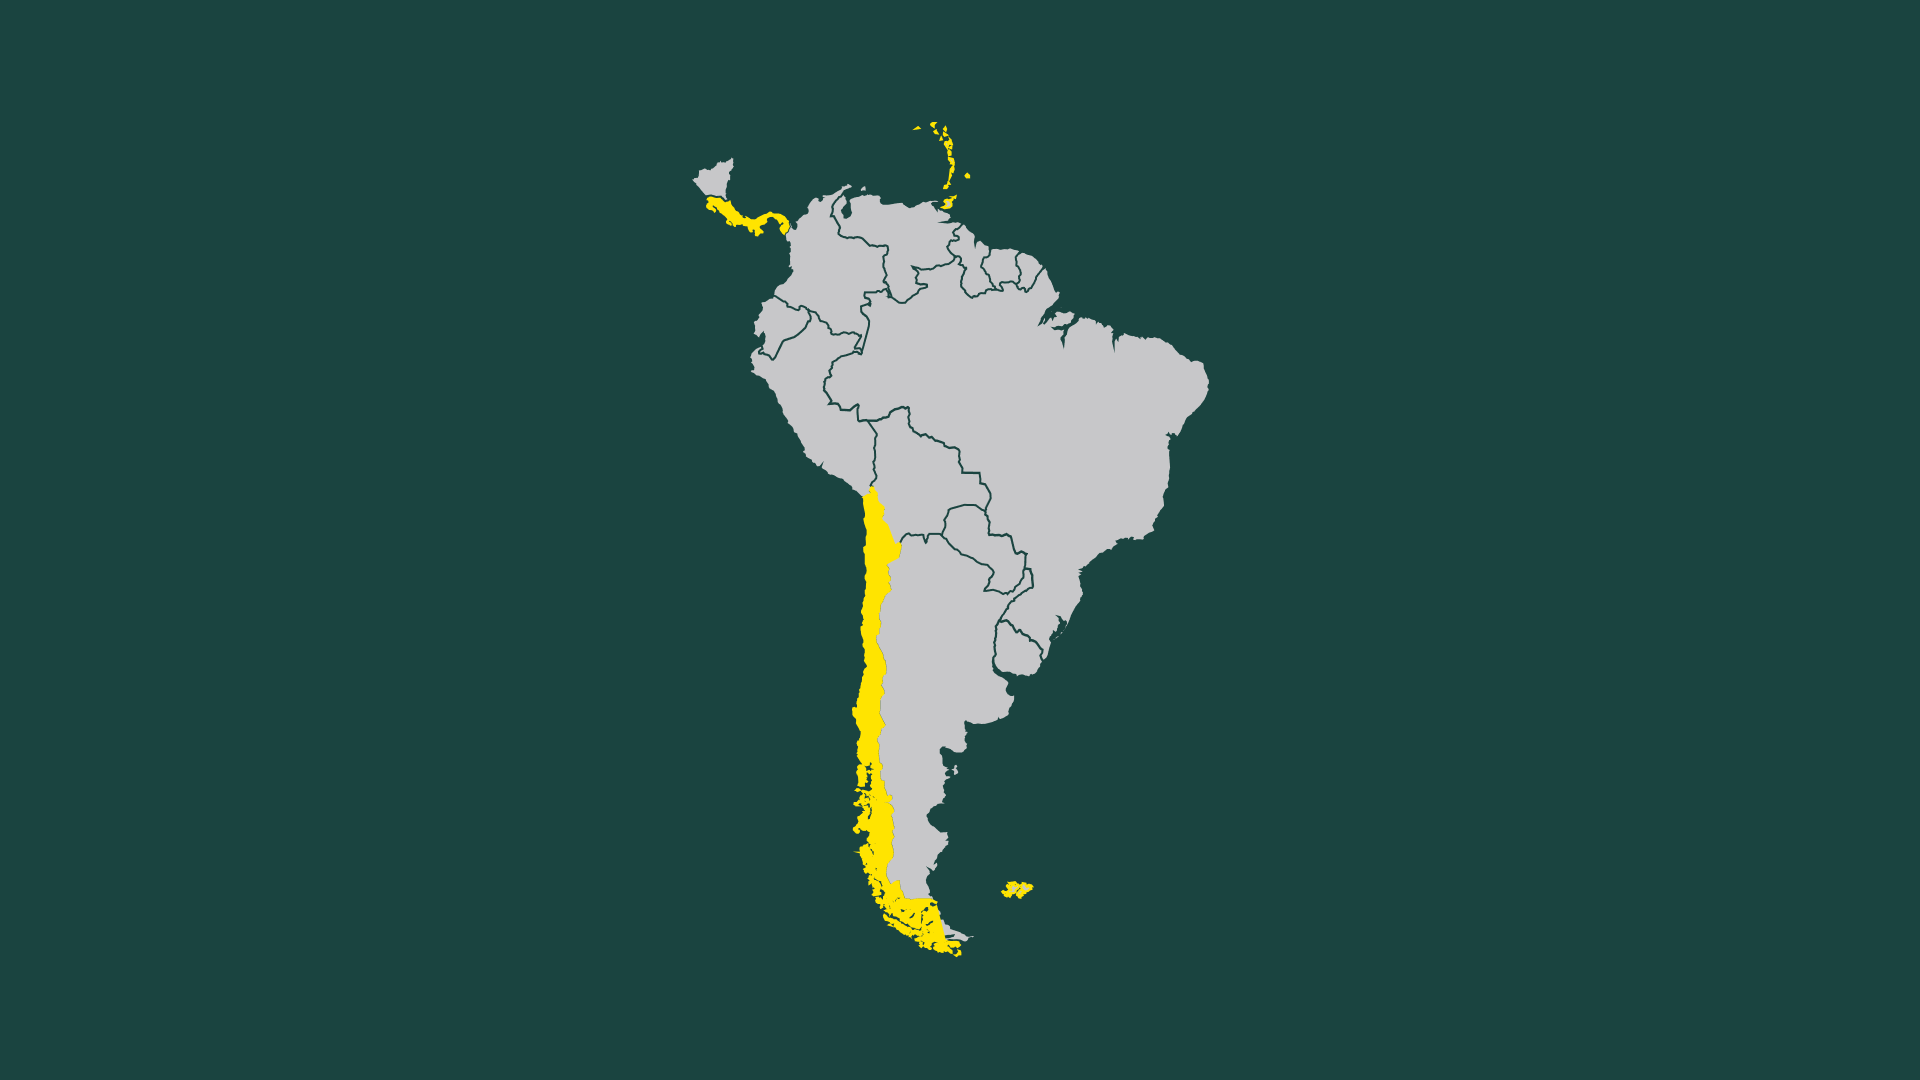 Süd- und Lateinamerika: Fortschritt durch Nachhaltigkeit